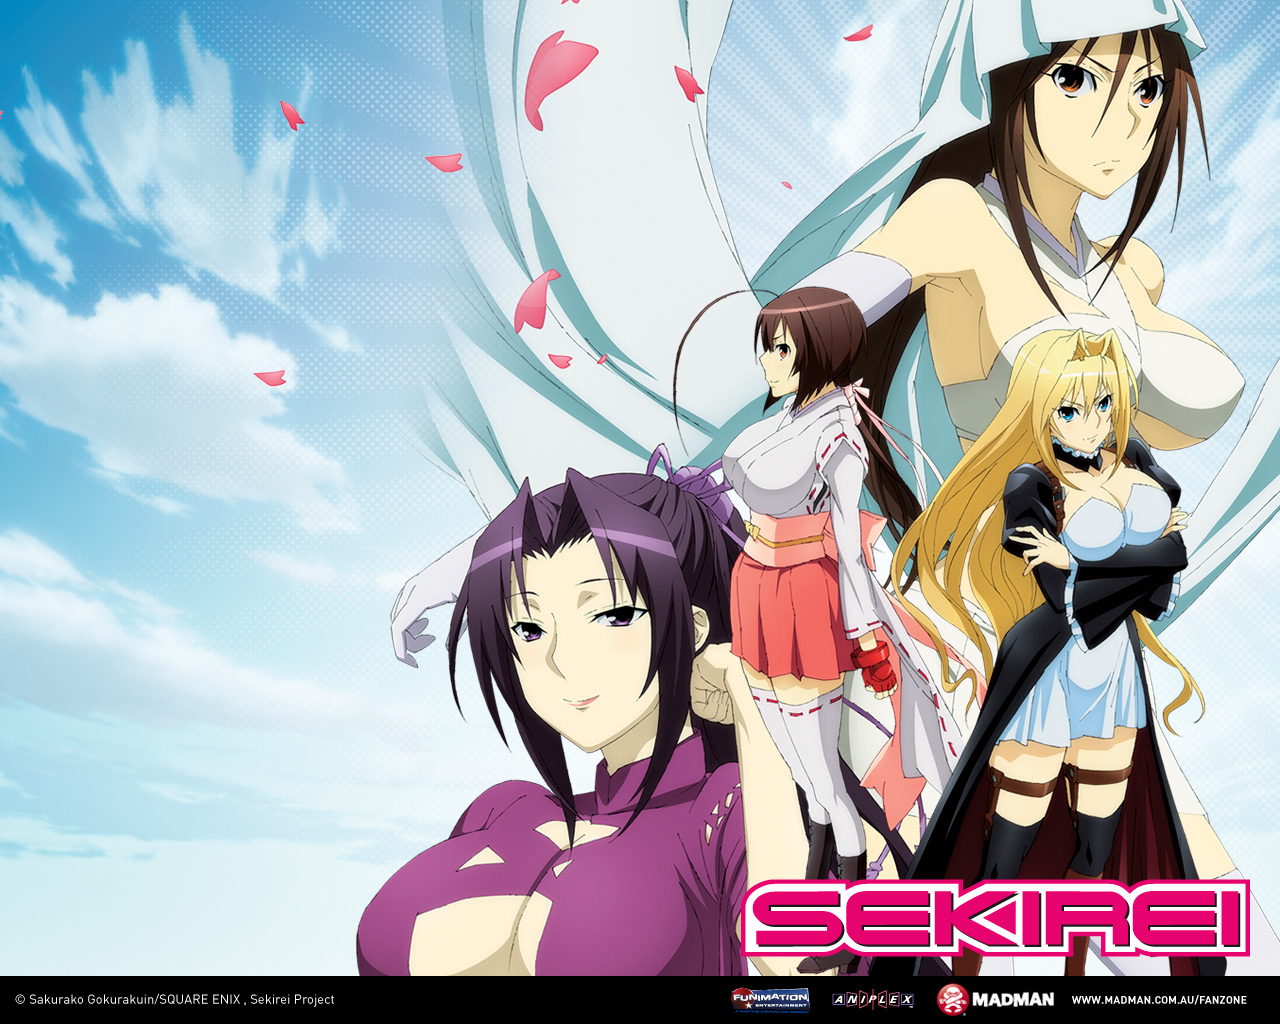 Sekirei Backgrounds, Compatible - PC, Mobile, Gadgets| 1280x1024 px